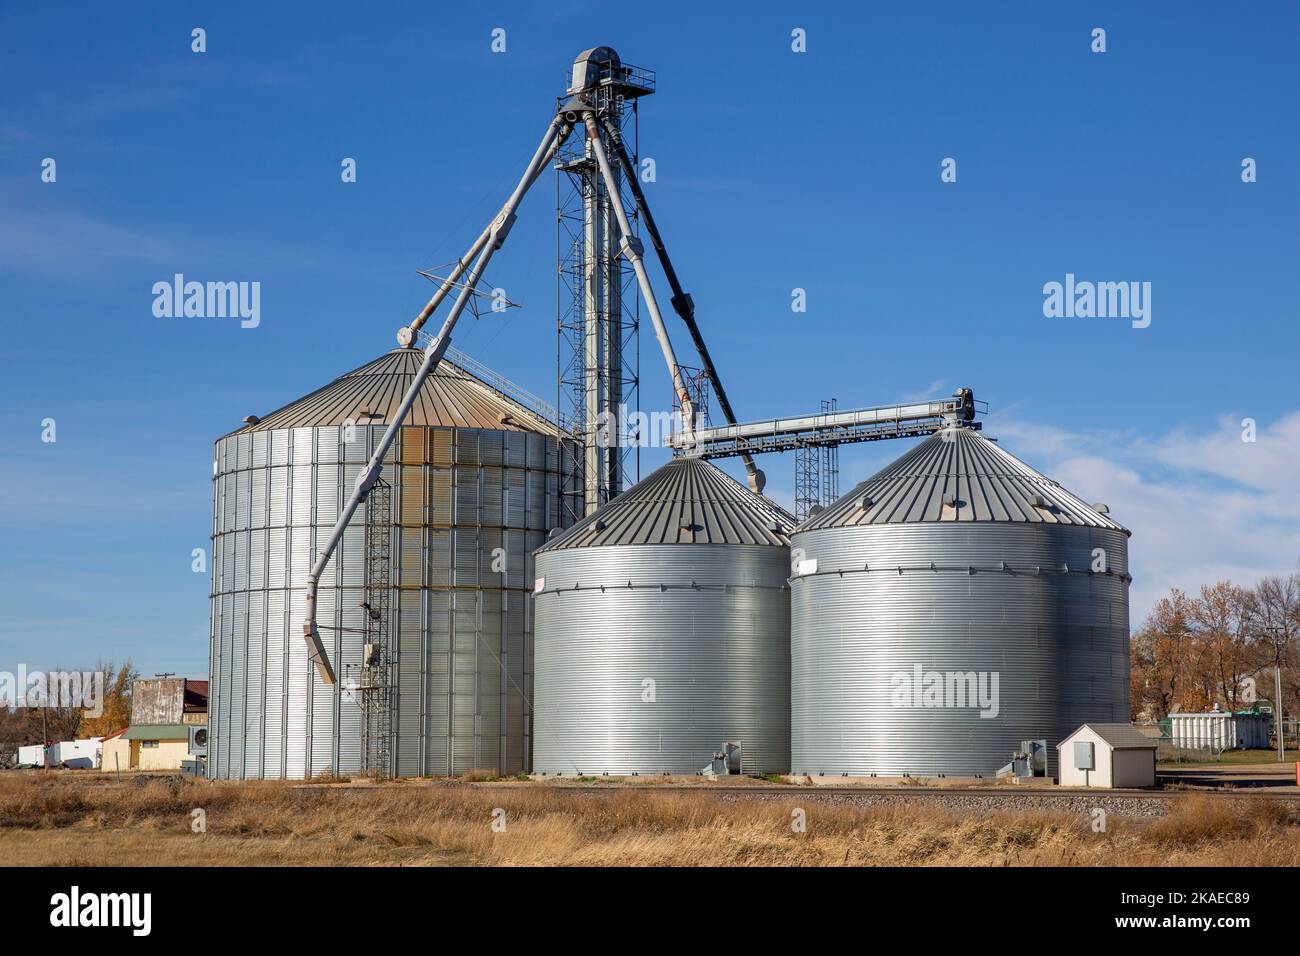 Drei konische Metallbehälter, die zur Lagerung von landwirtschaftlichen Nutzpflanzen wie Weizen in Cleveland, North Dakota, verwendet werden Stockfoto